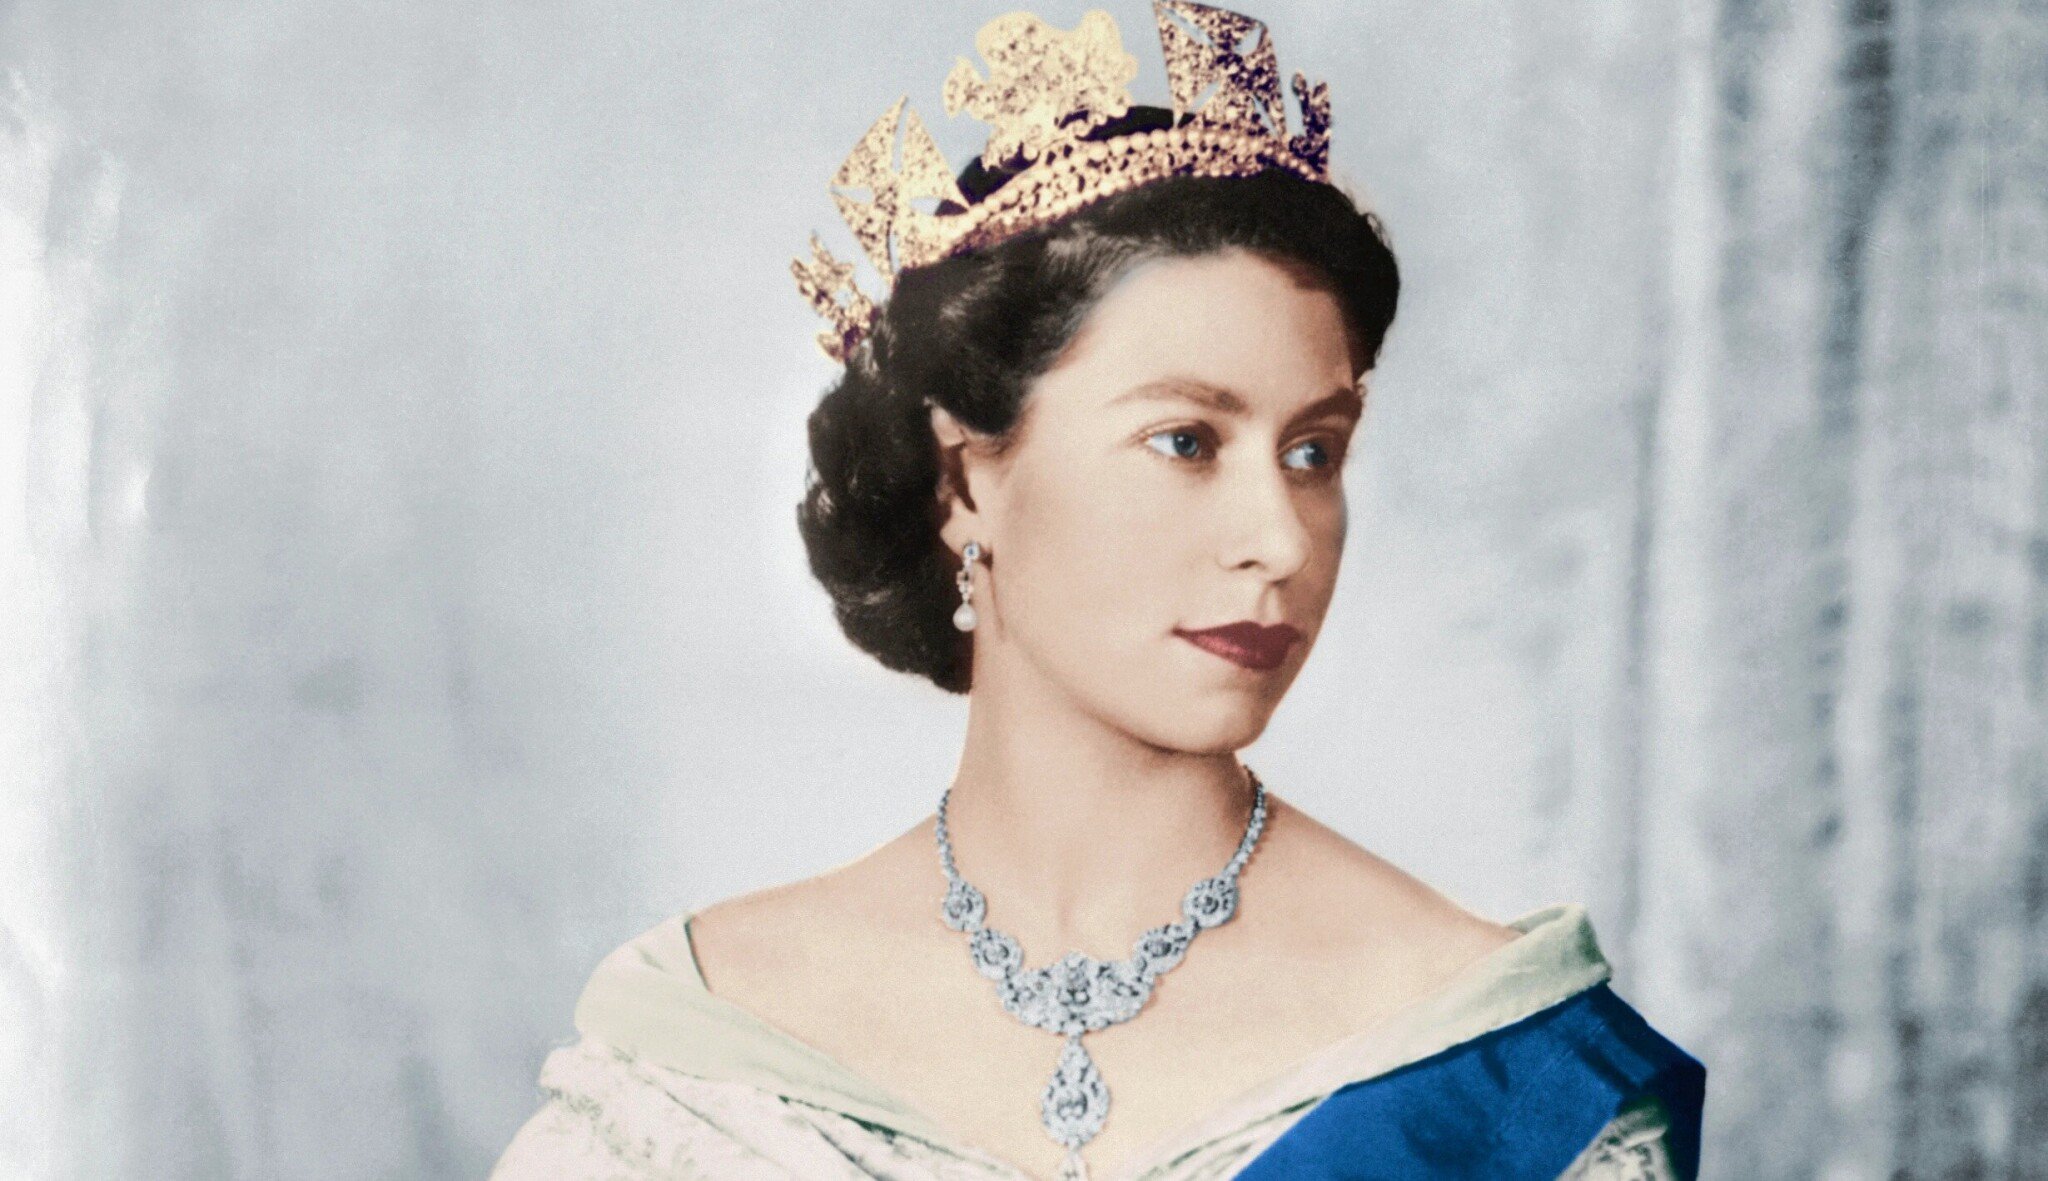 Odešla královna všech. 96 věcí, které byste měli vědět o Alžbětě II.